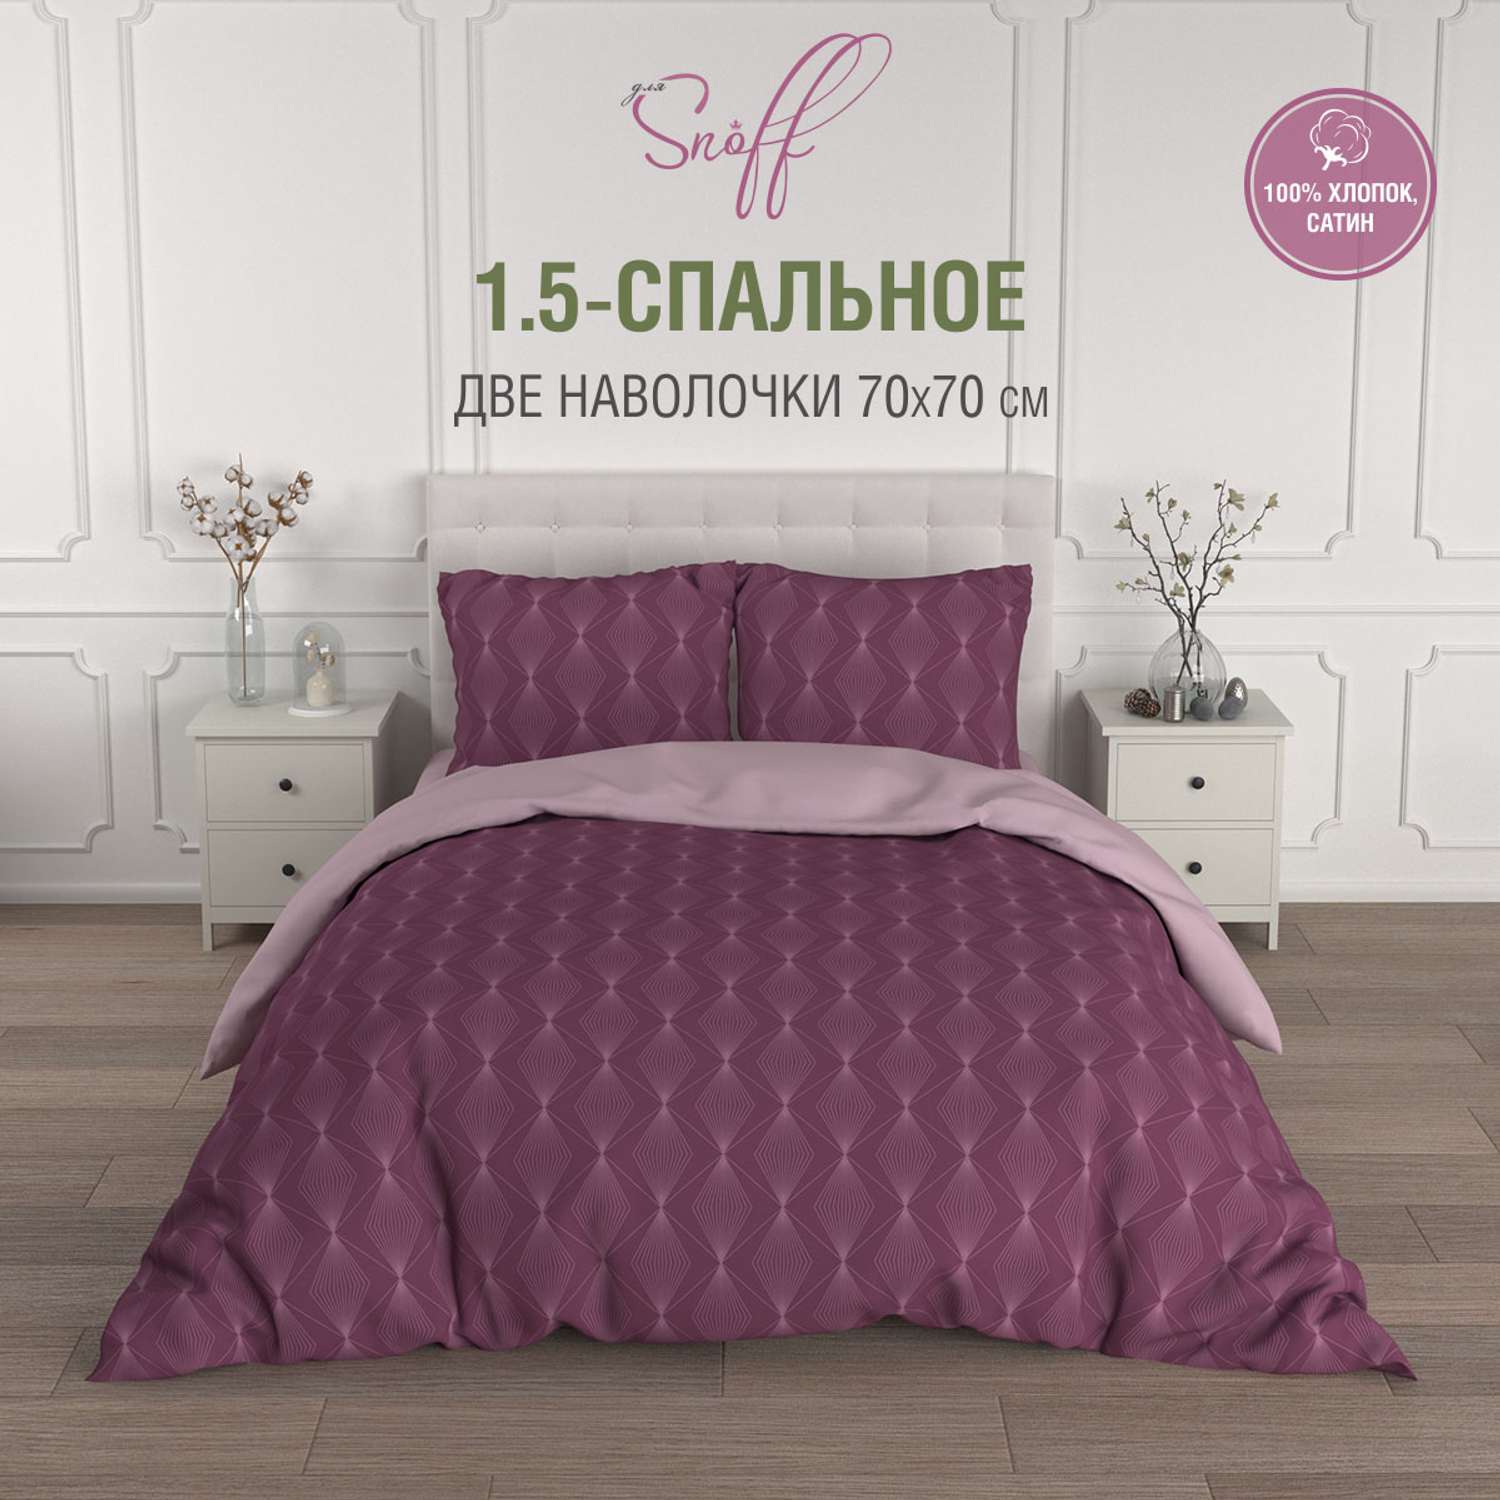 Комплект постельного белья для SNOFF Виносо 1.5-спальный сатин - фото 2